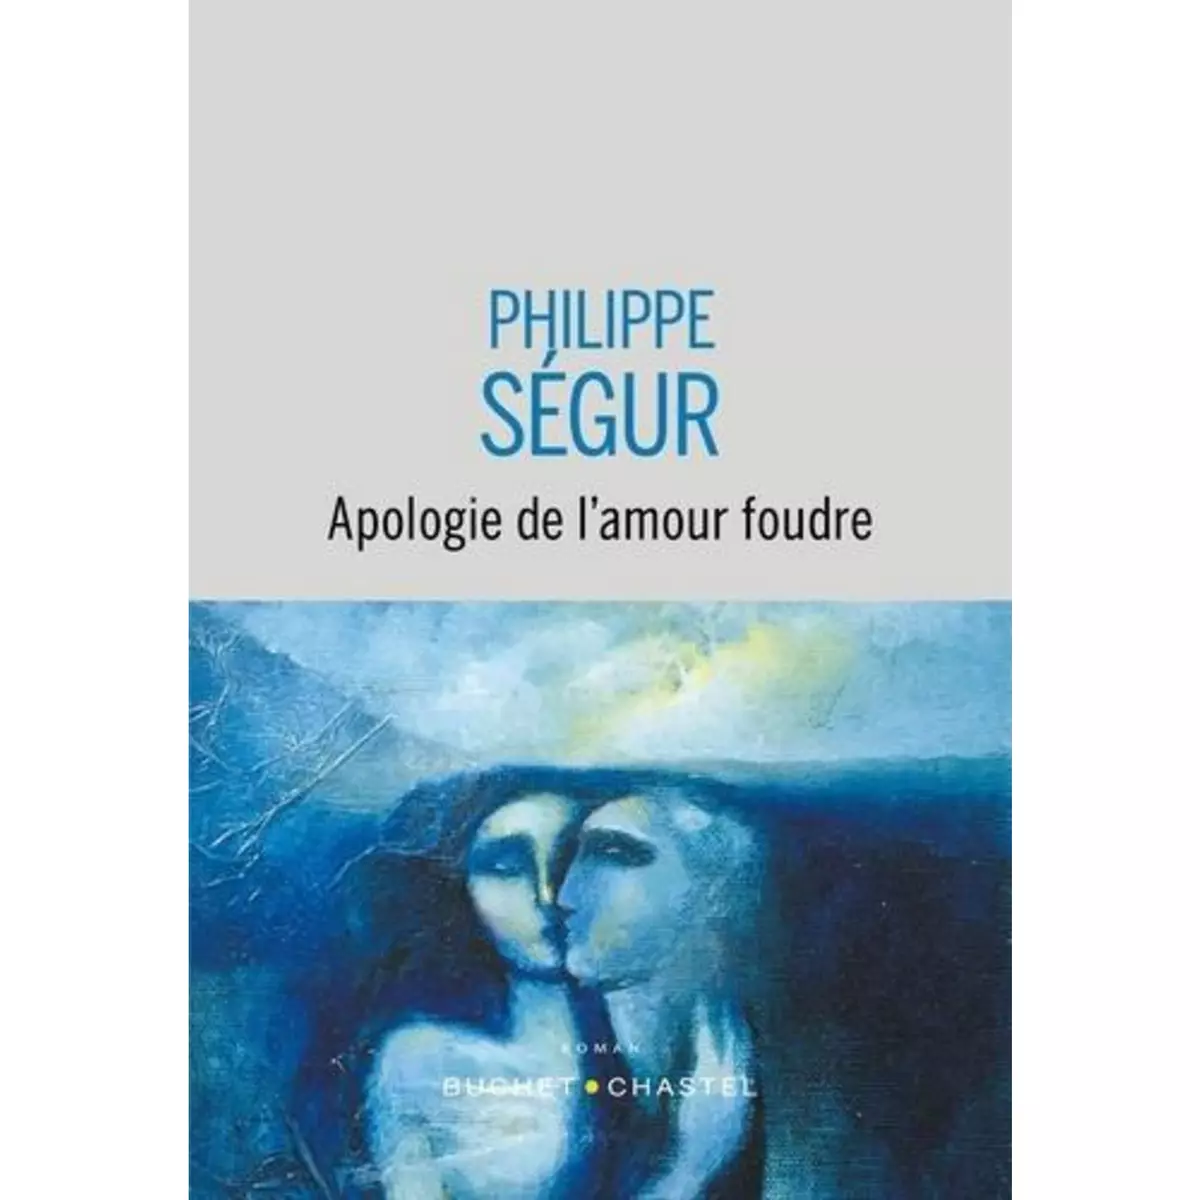  APOLOGIE DE L'AMOUR FOUDRE, Ségur Philippe